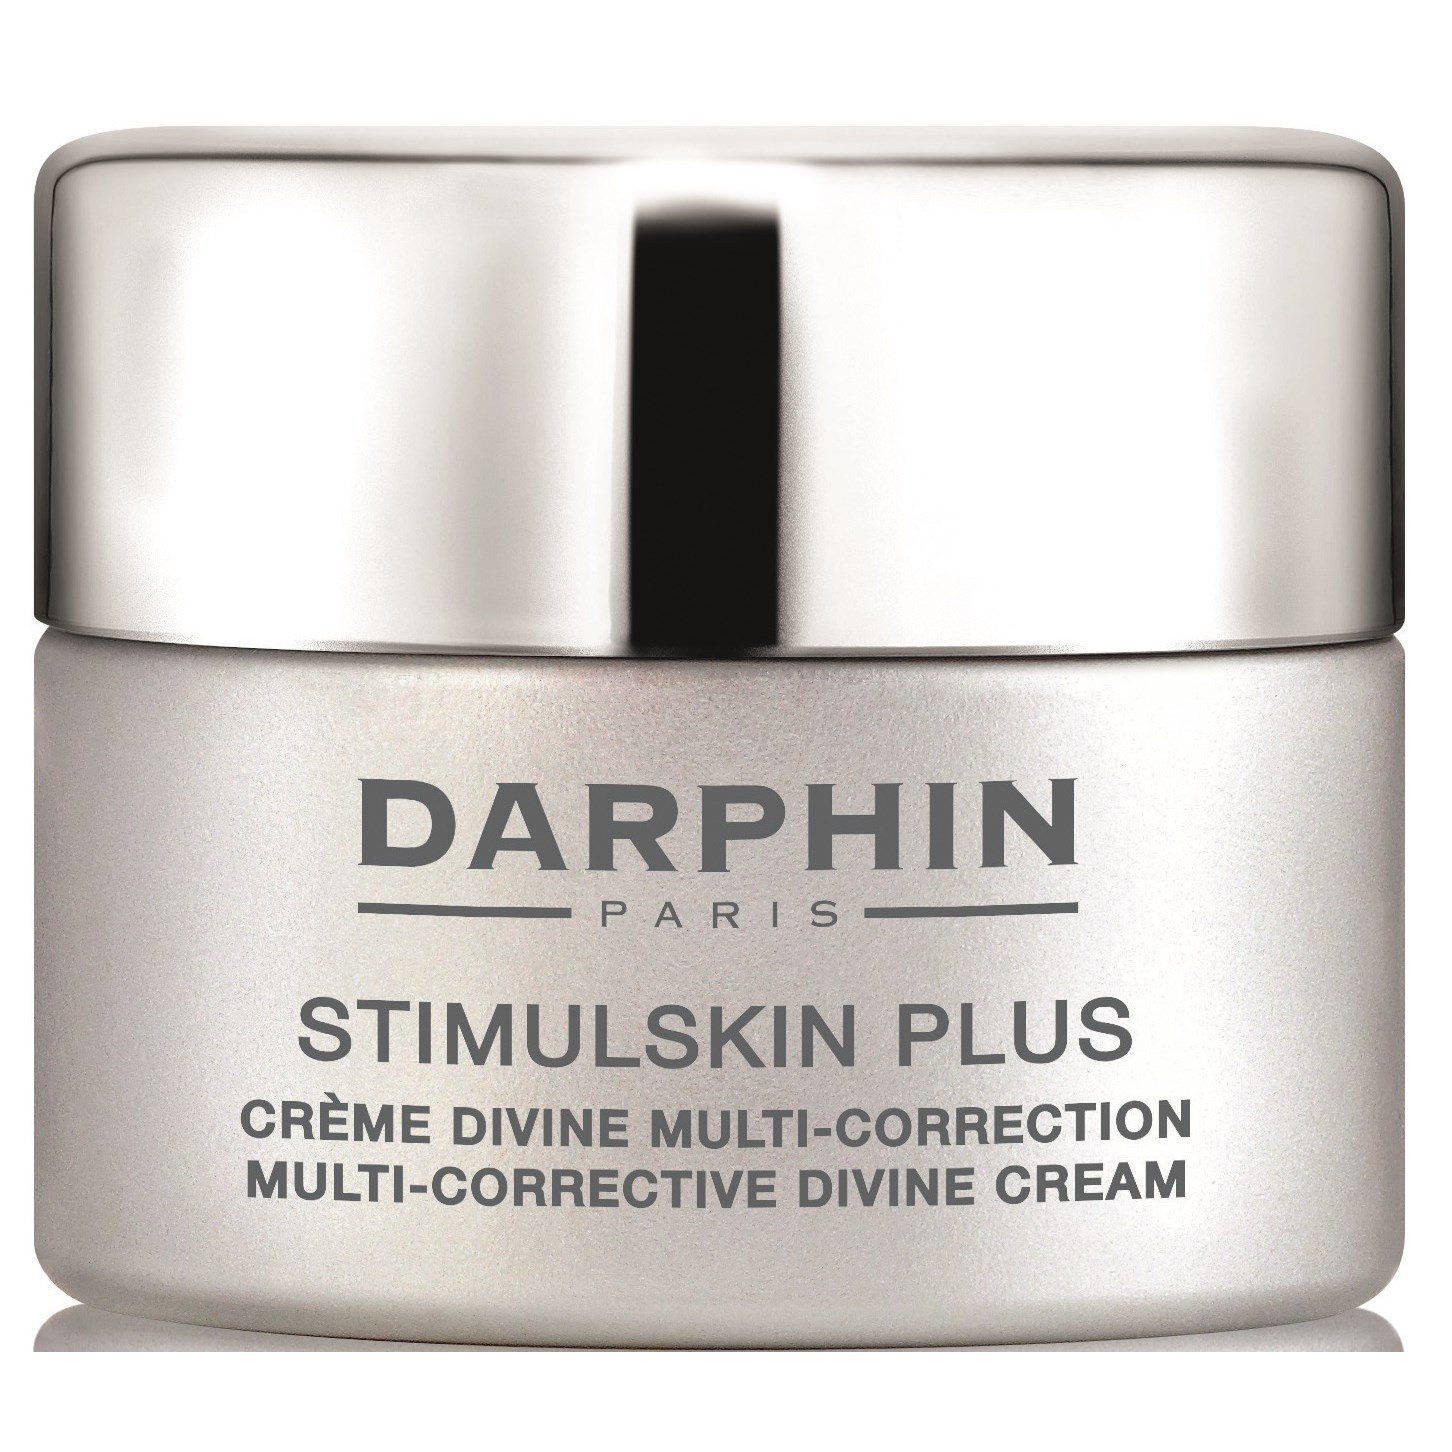 Darphin Stimulskin Plus Darphin Stimulskin Plus Multi Corrective